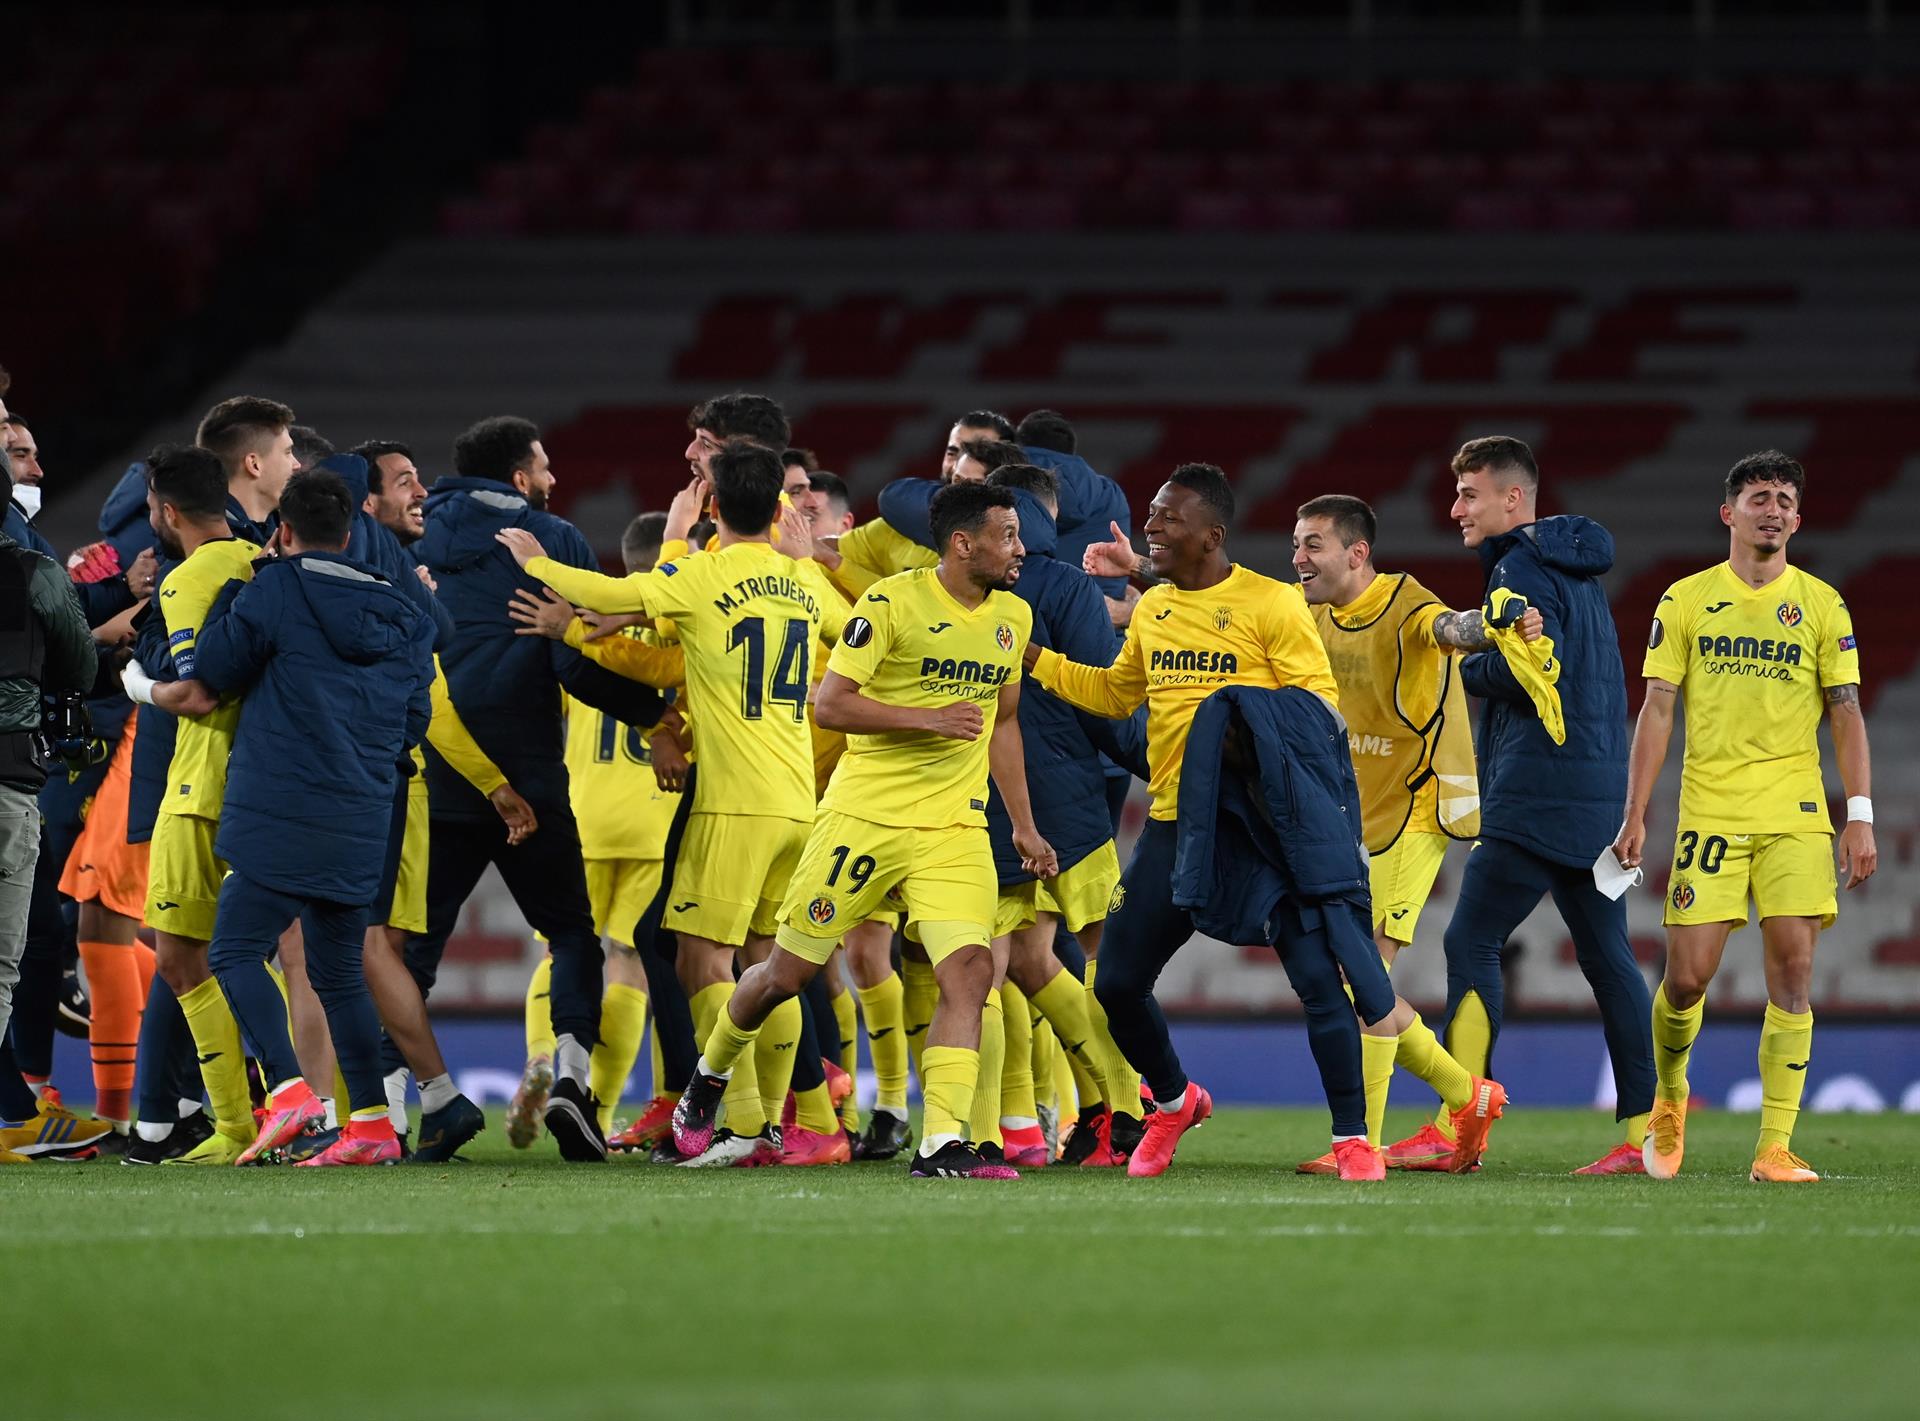 El Villarreal salda su deuda con la historia y jugará la primera final europea de su historia